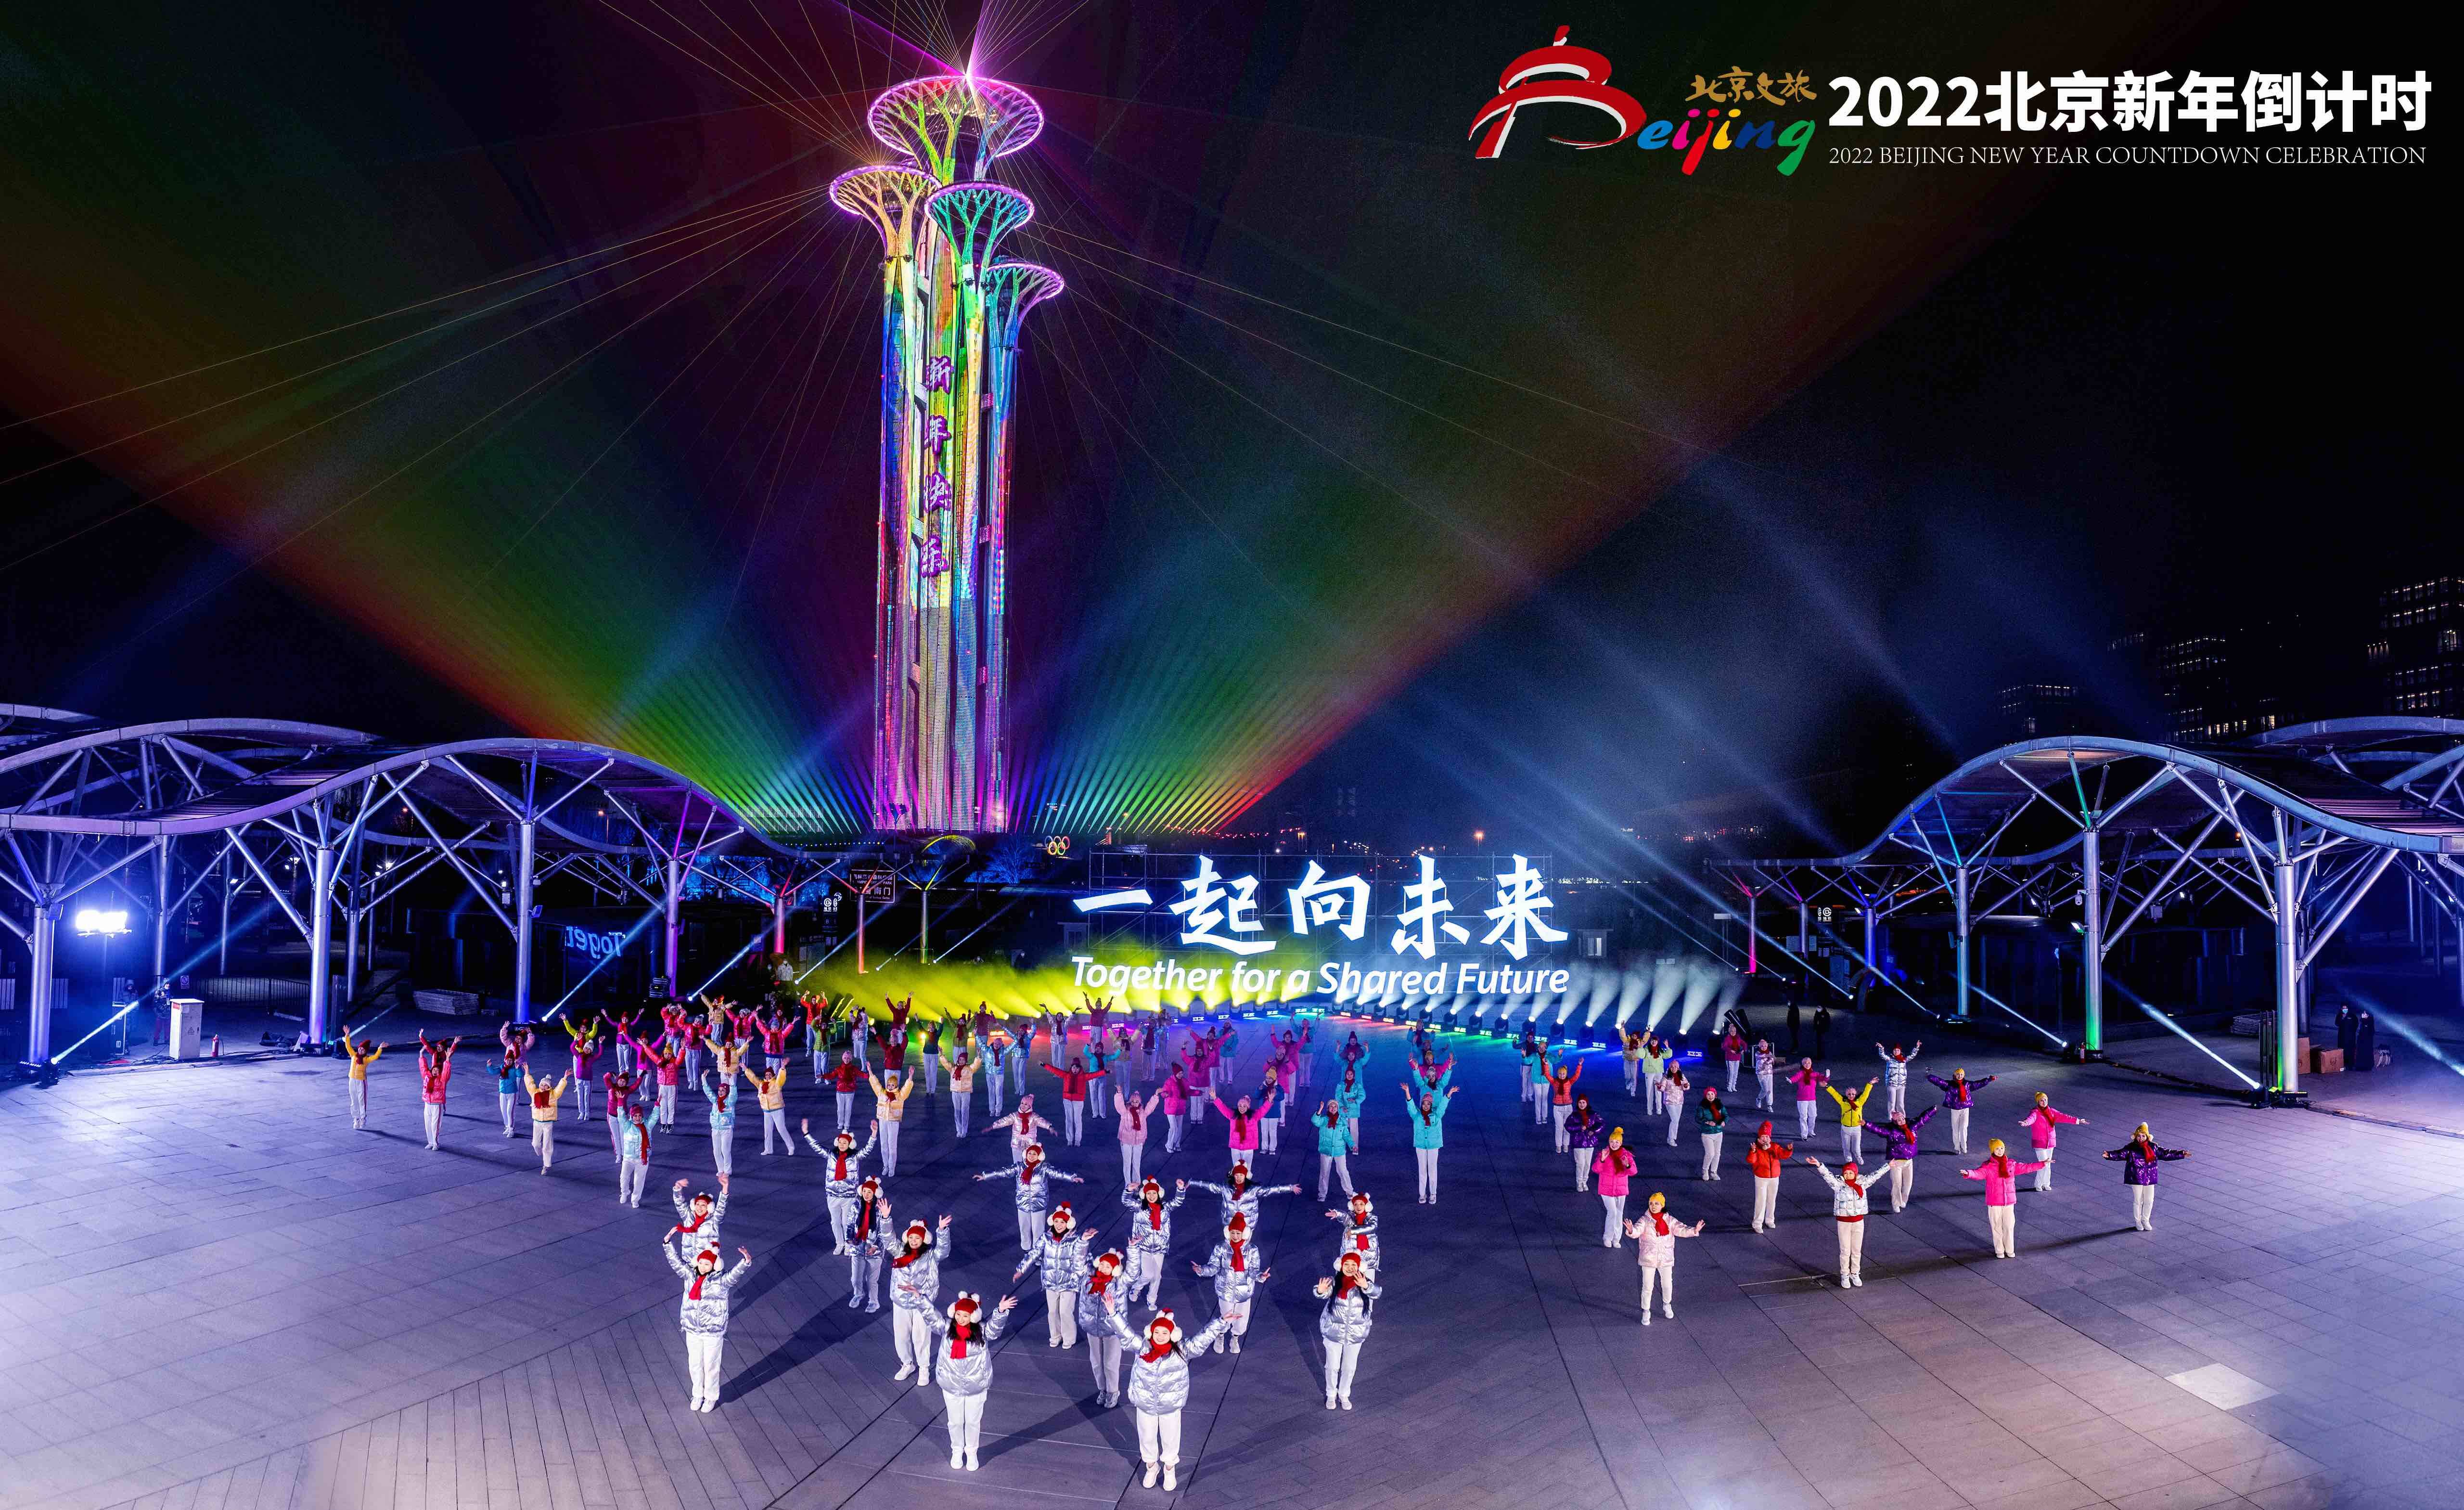 相约冬奥 再聚北京——2022北京新年倒计时活动在奥林匹克塔举行